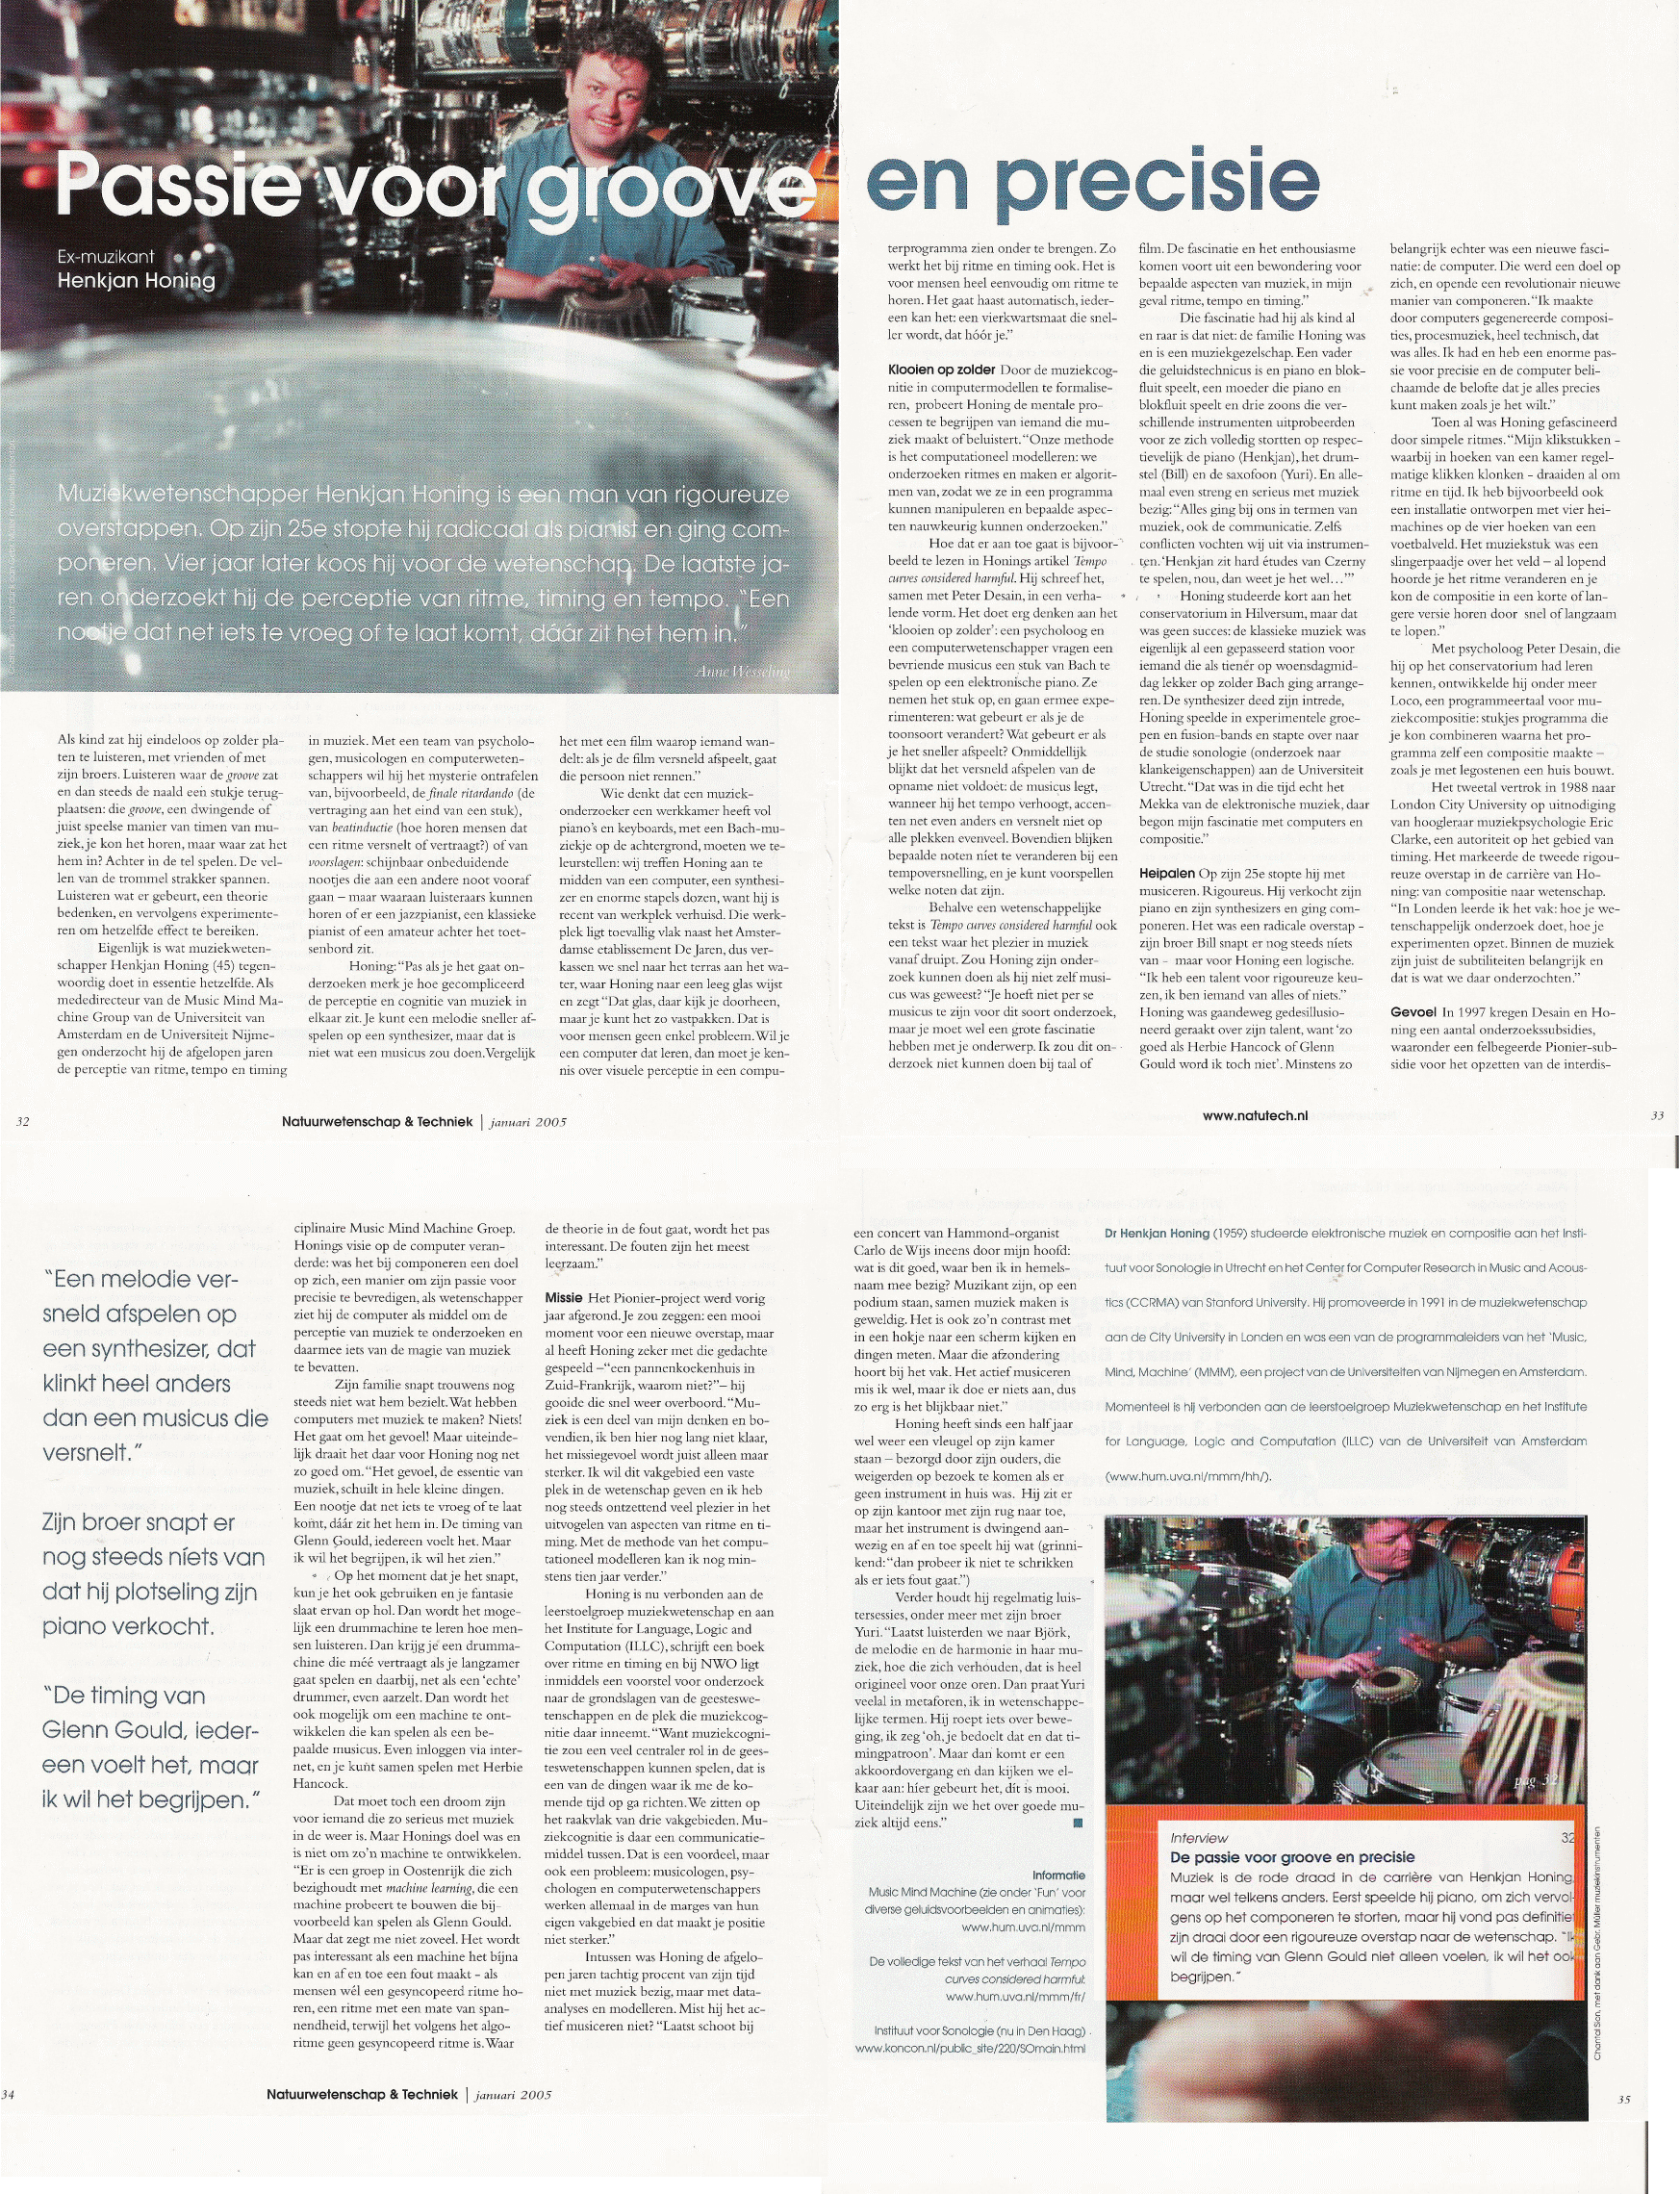 Natuurwetenschap & Techniek, Januari 2005